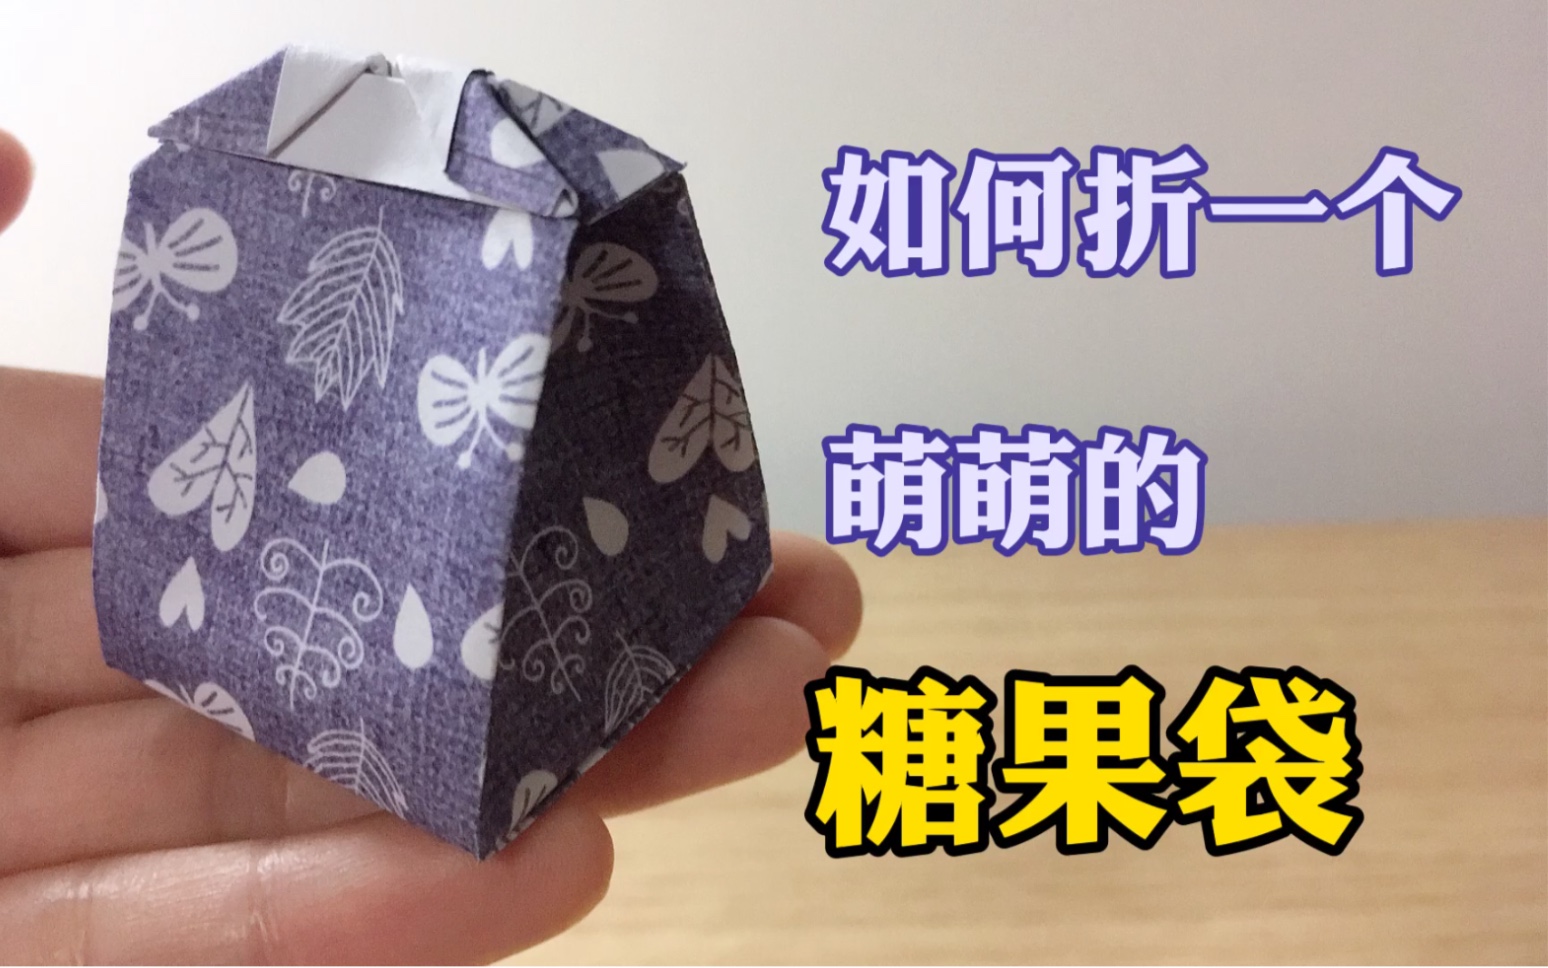 折纸教程第五弹如何折一个萌萌的糖果袋